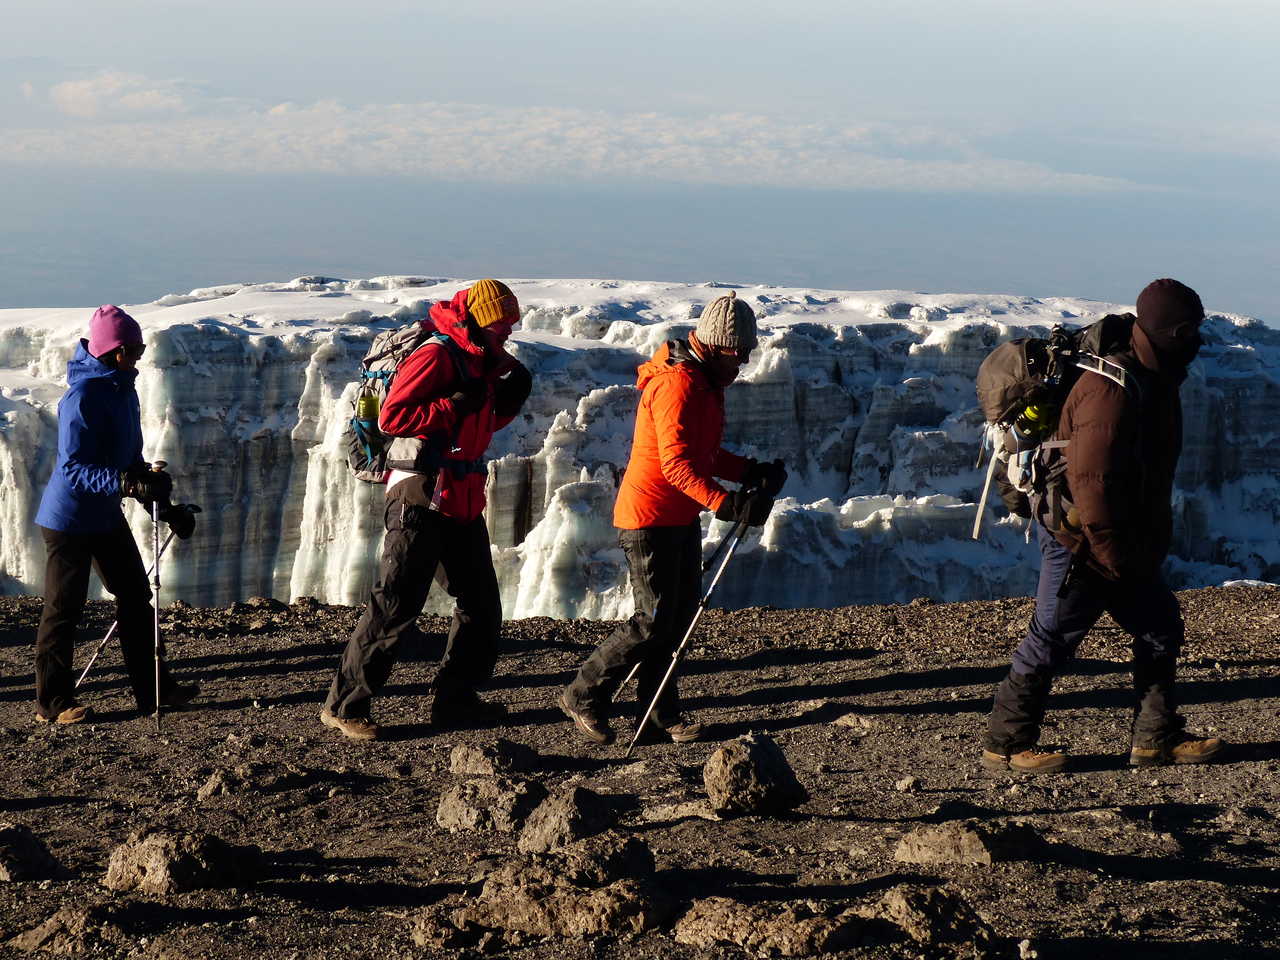 Petit groupe de randonneurs dans le cratère du Kibo, au plus près des glacier du Kilimandjaro en Tanzanie